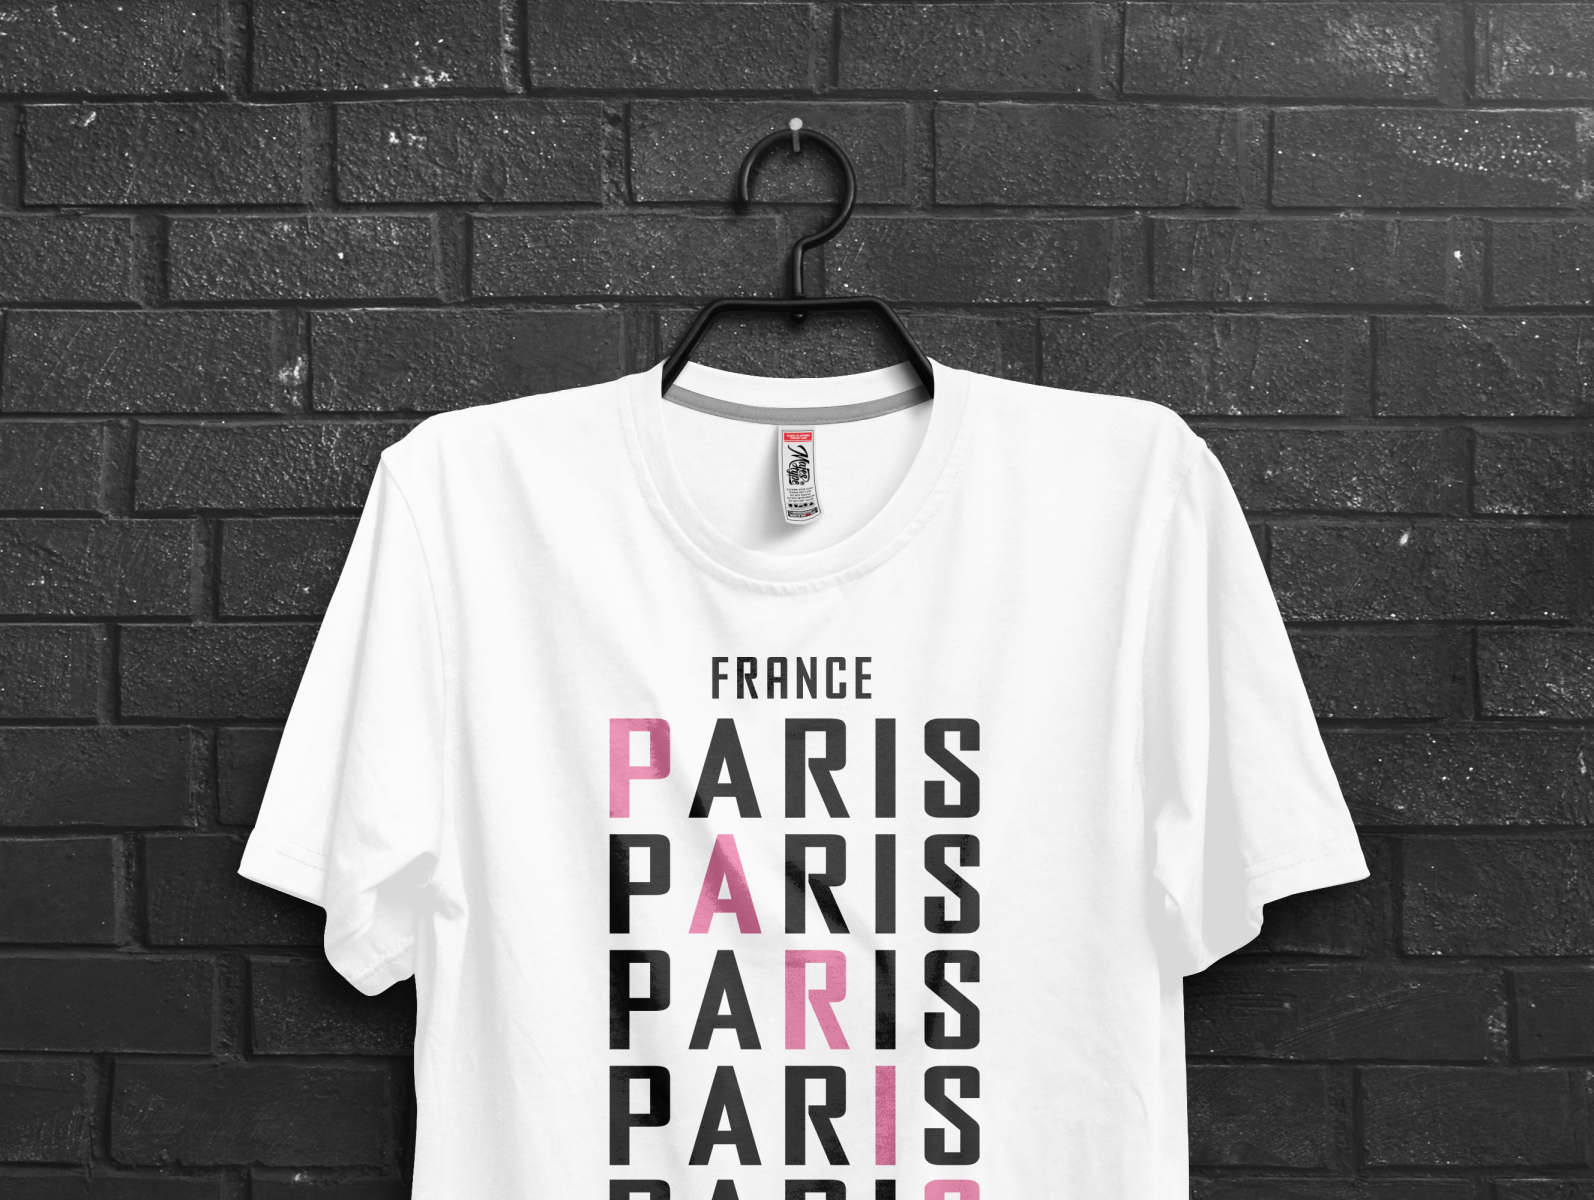 Paris T-shirt Design by Emon Hossain on Dribbble